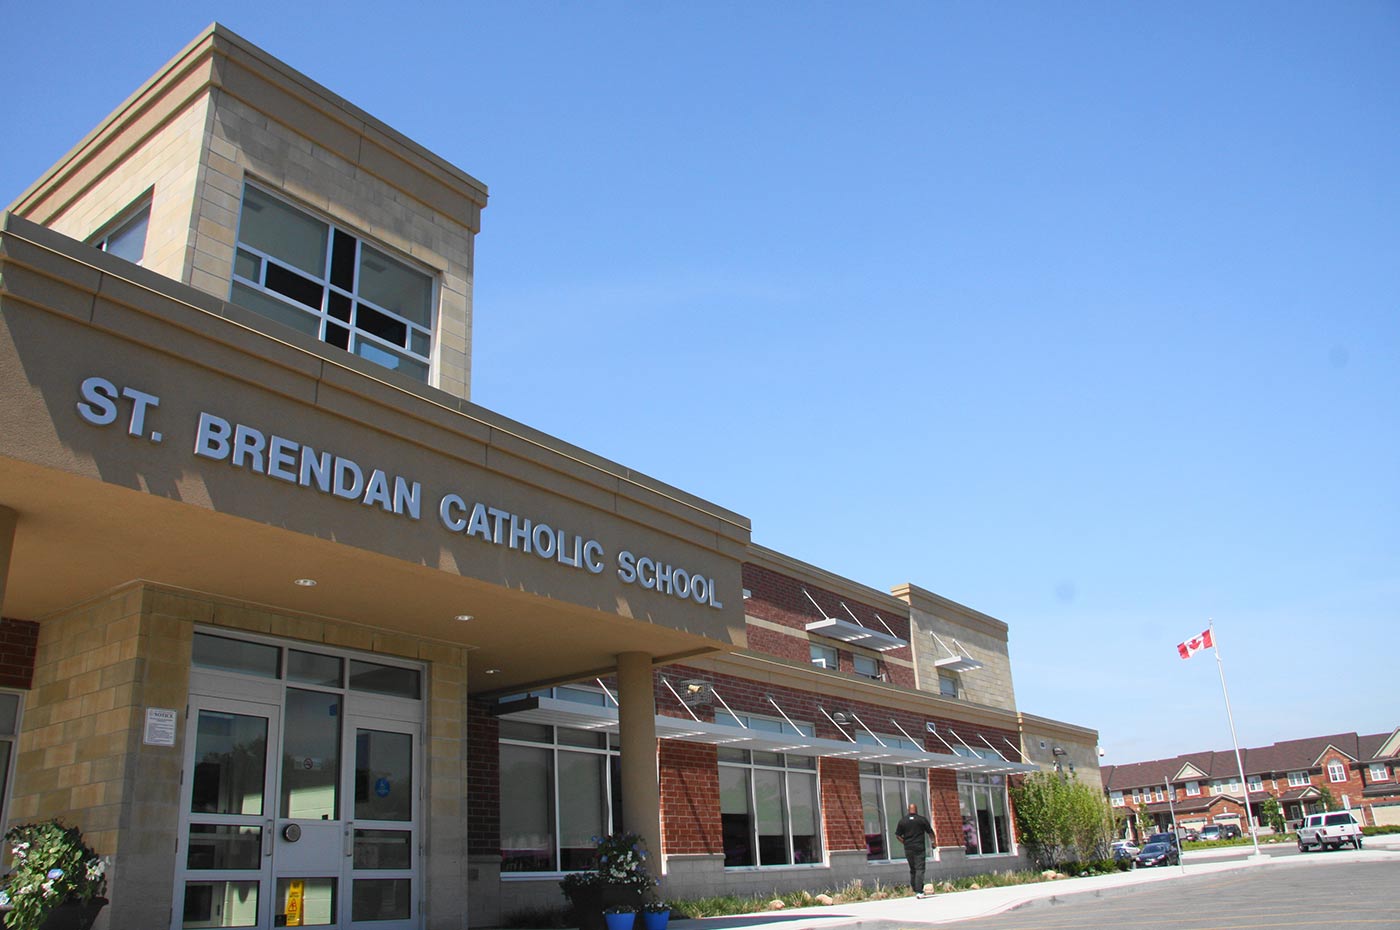 St. Brendan Elementary School